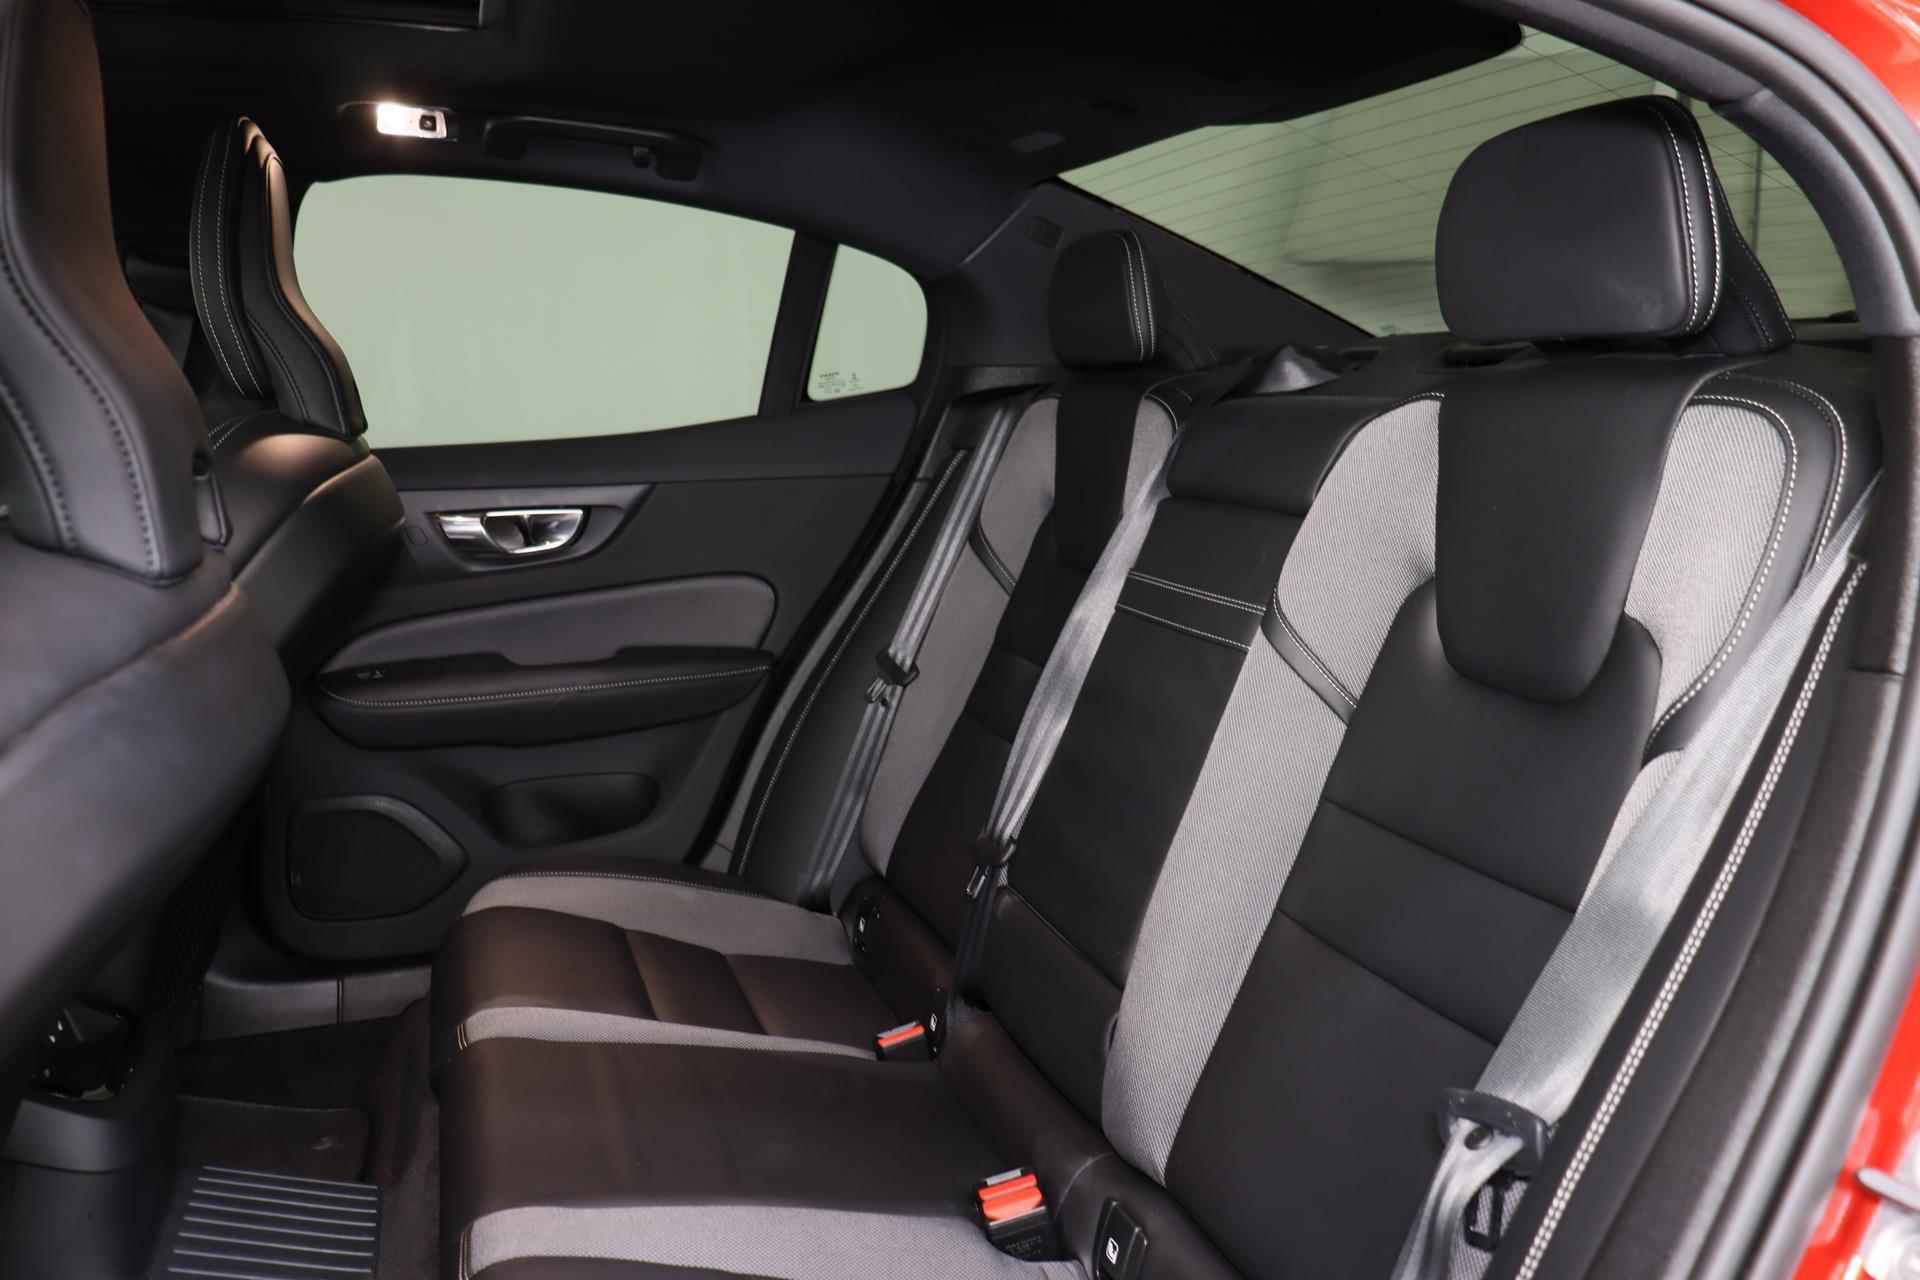 Volvo S60 Recharge T8 AWD R-Design - Panorama/schuifdak - IntelliSafe Assist - Harman/Kardon audio - 360º Camera - Adaptieve LED koplampen - Verwarmde voorstoelen, stuur & achterbank - Parkeersensoren voor & achter - Elektr. bedienb. voorstoelen met geheugen - Standkachel - 19' LMV - 25/28